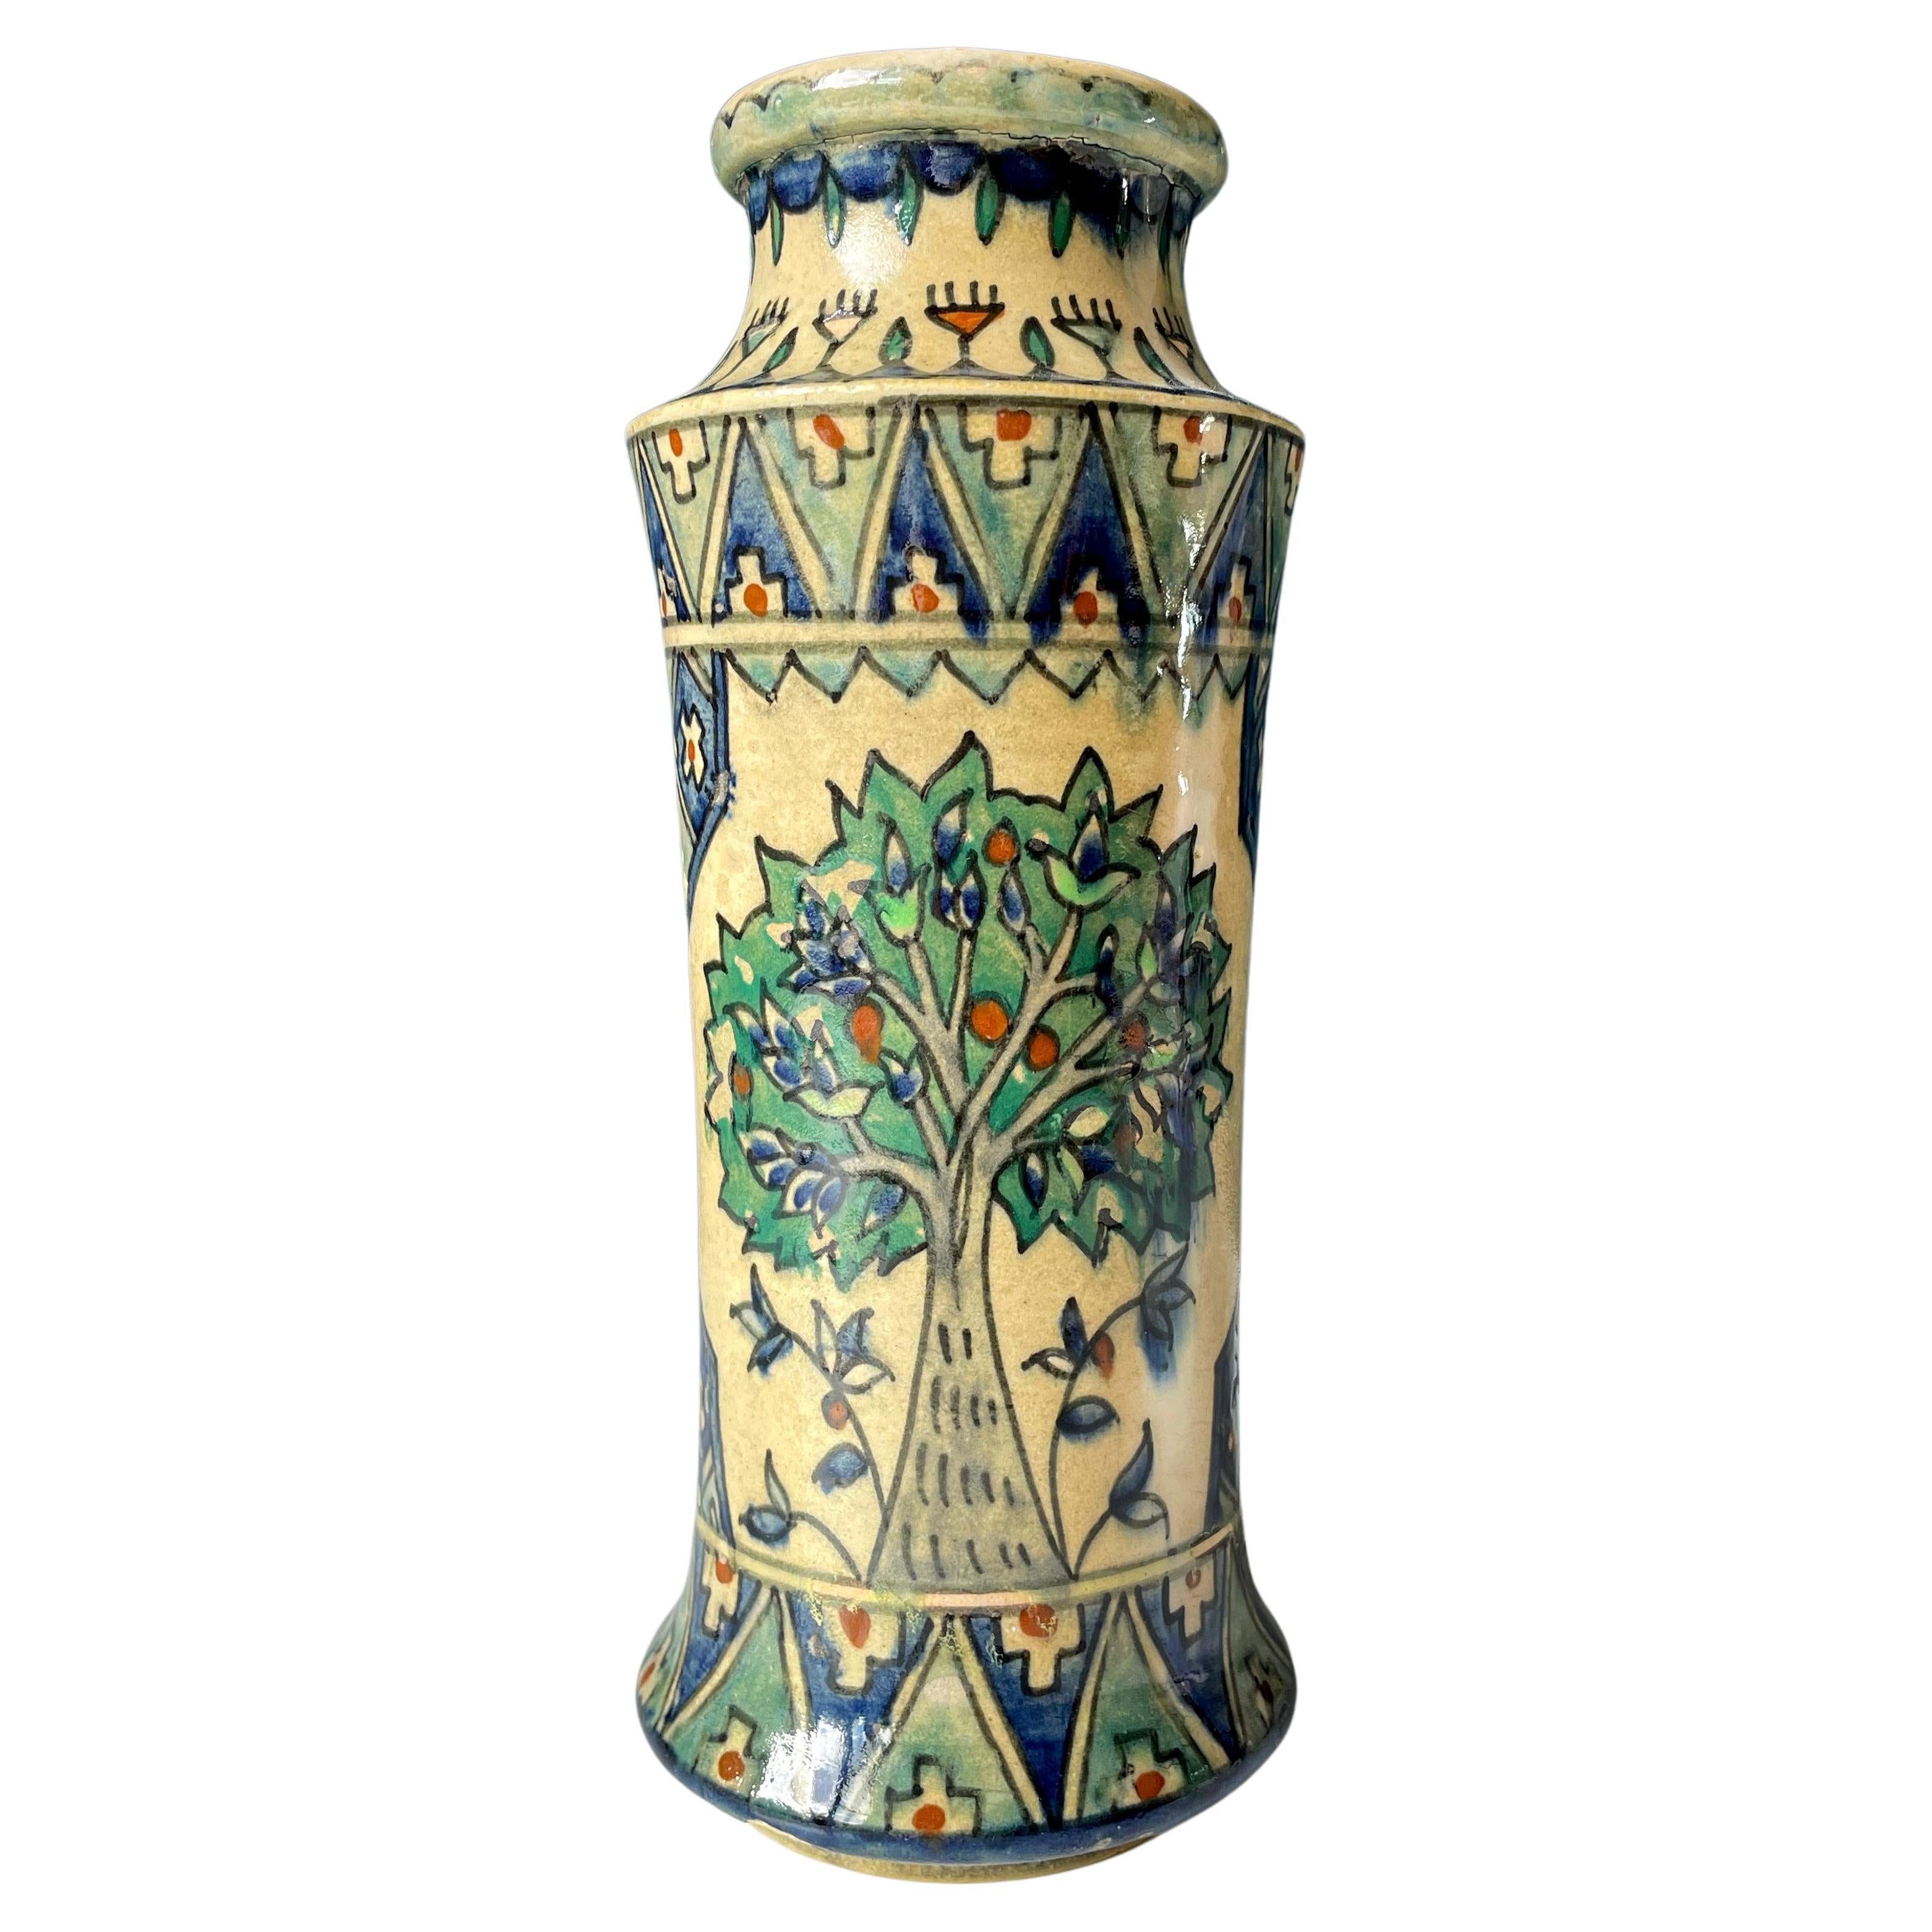 Grand vase ancien en poterie arménienne, datant des années 1920 environ, Jérusalem